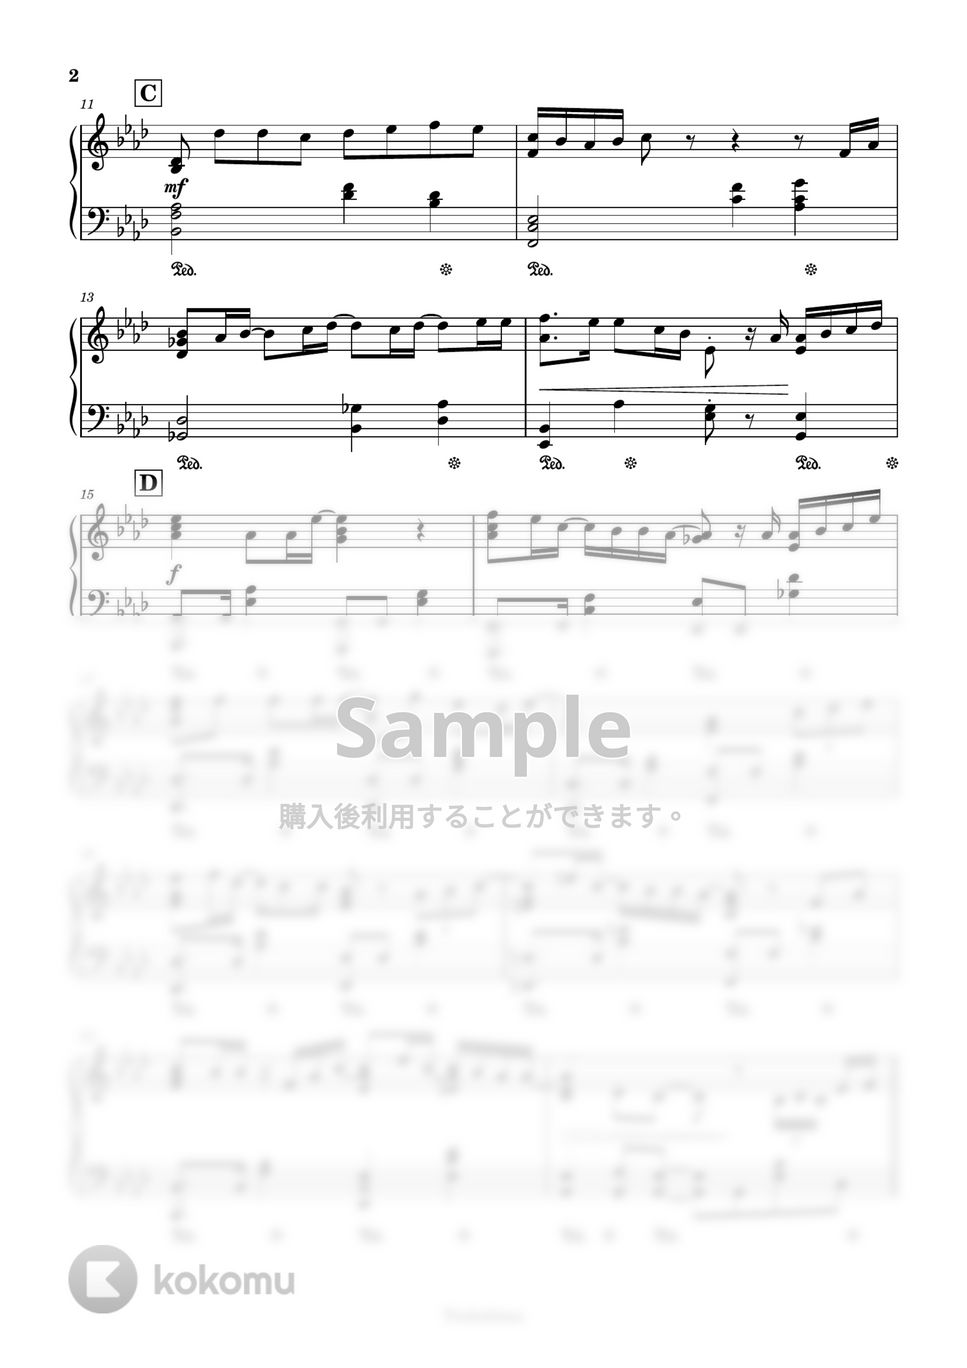 清水翔太 - 花束のかわりにメロディーを by Trohishima